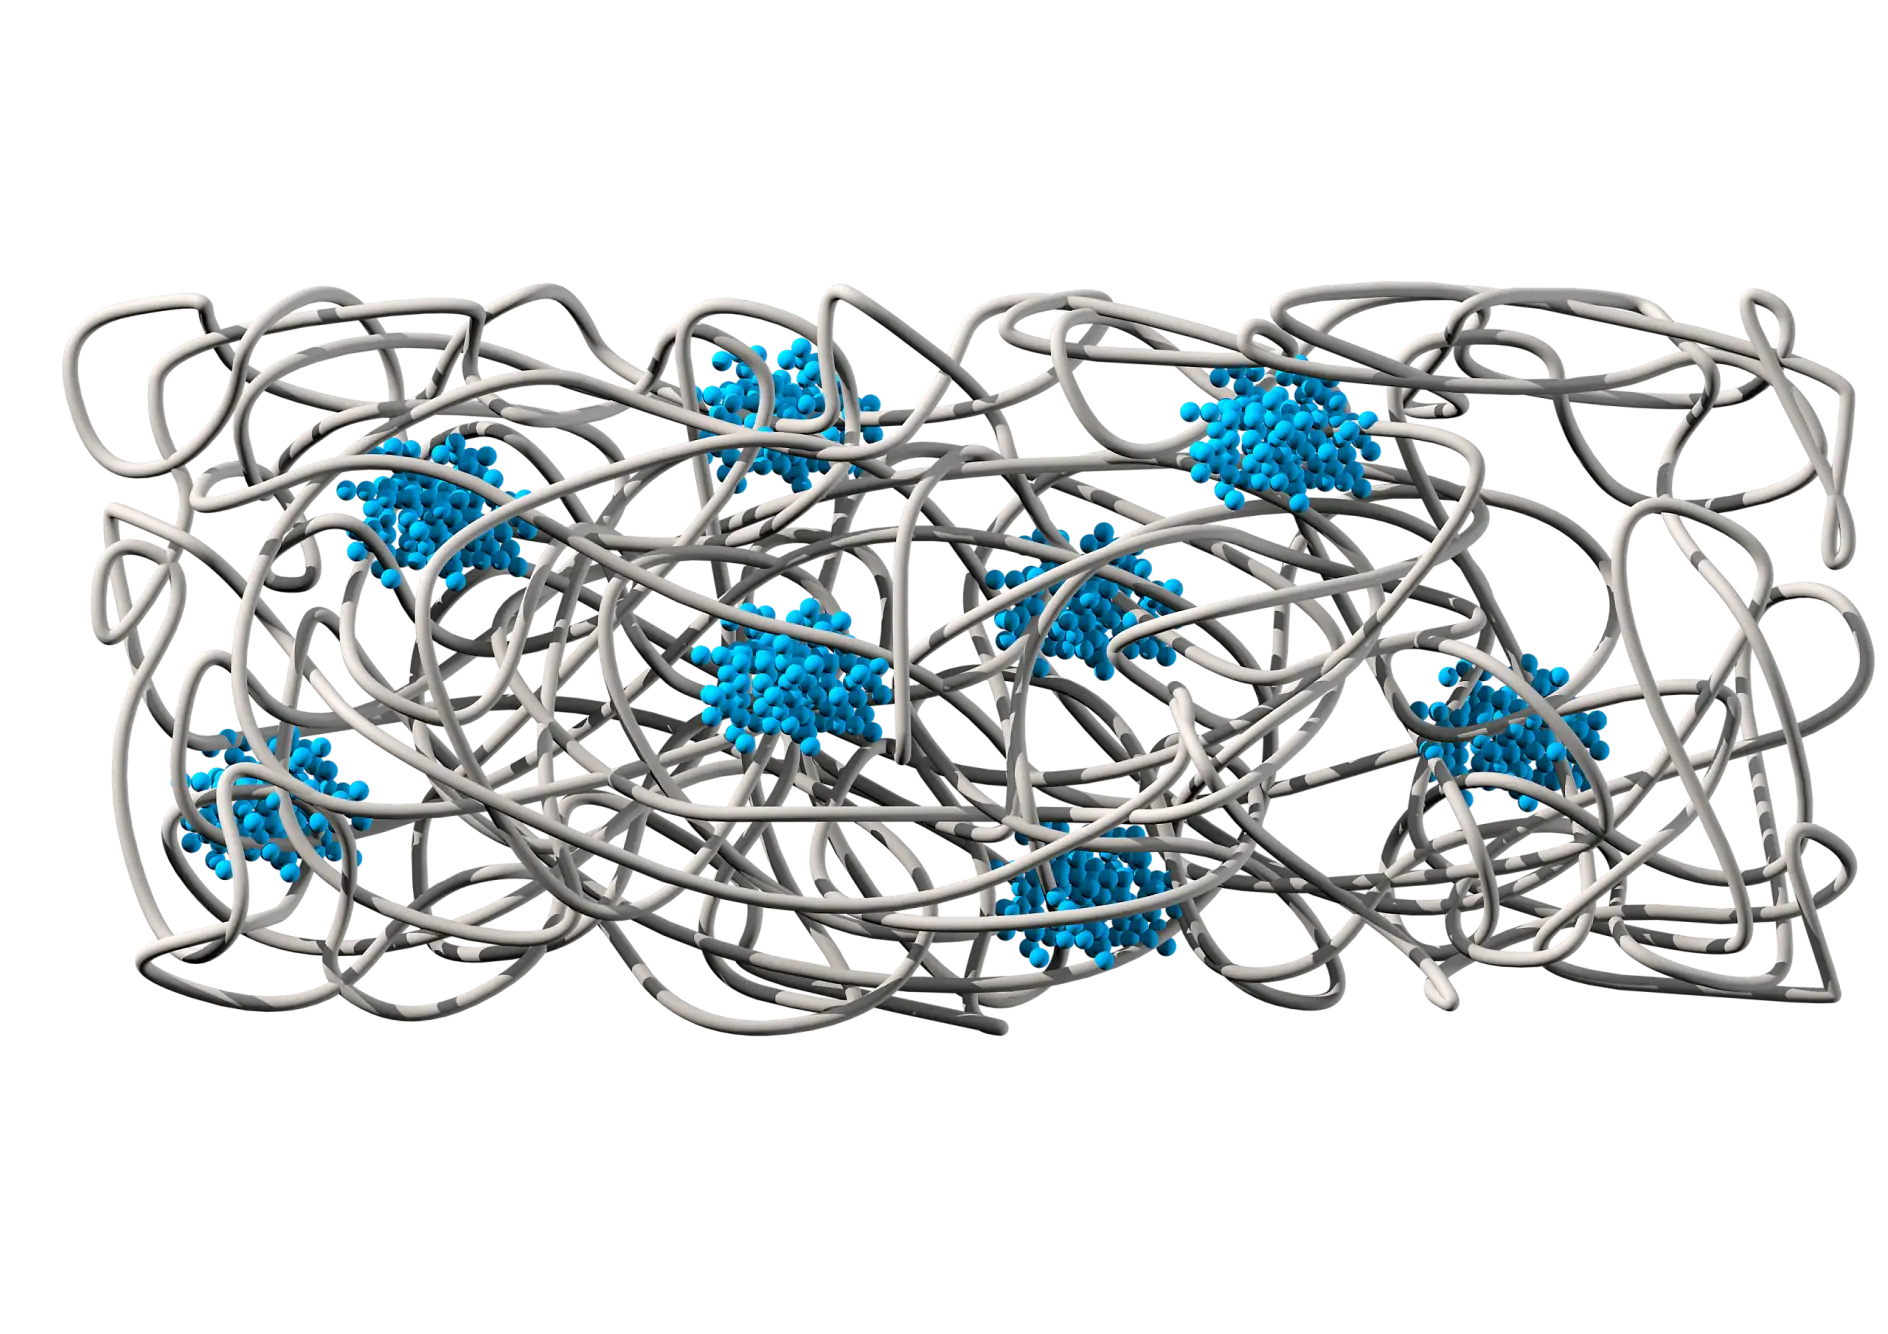 De chemische structuur laat een rubbermatrix (grijs) zien die voor adhesie en elasticiteit zorgt. En polystyreenkernen (blauw) bieden cohesie en scheurbestendigheid.